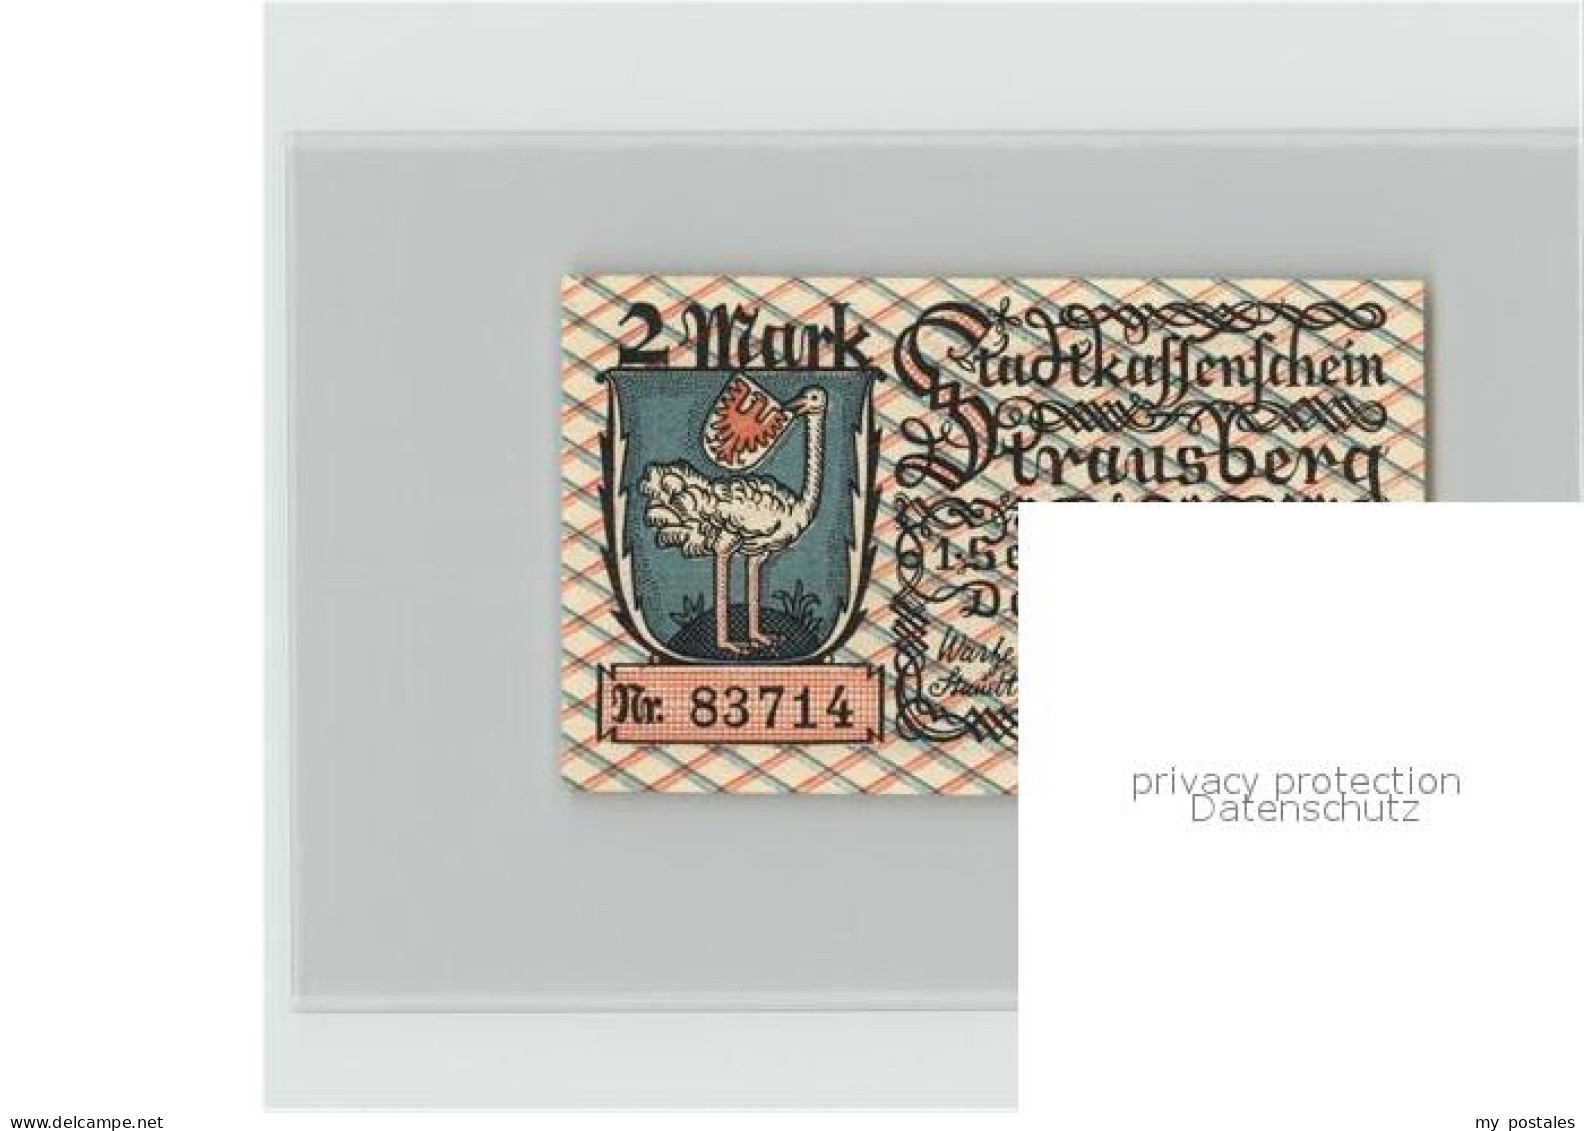 42381417 Strausberg Brandenburg Stadtkassenschein 2 Mark Wappen Strausberg - Strausberg